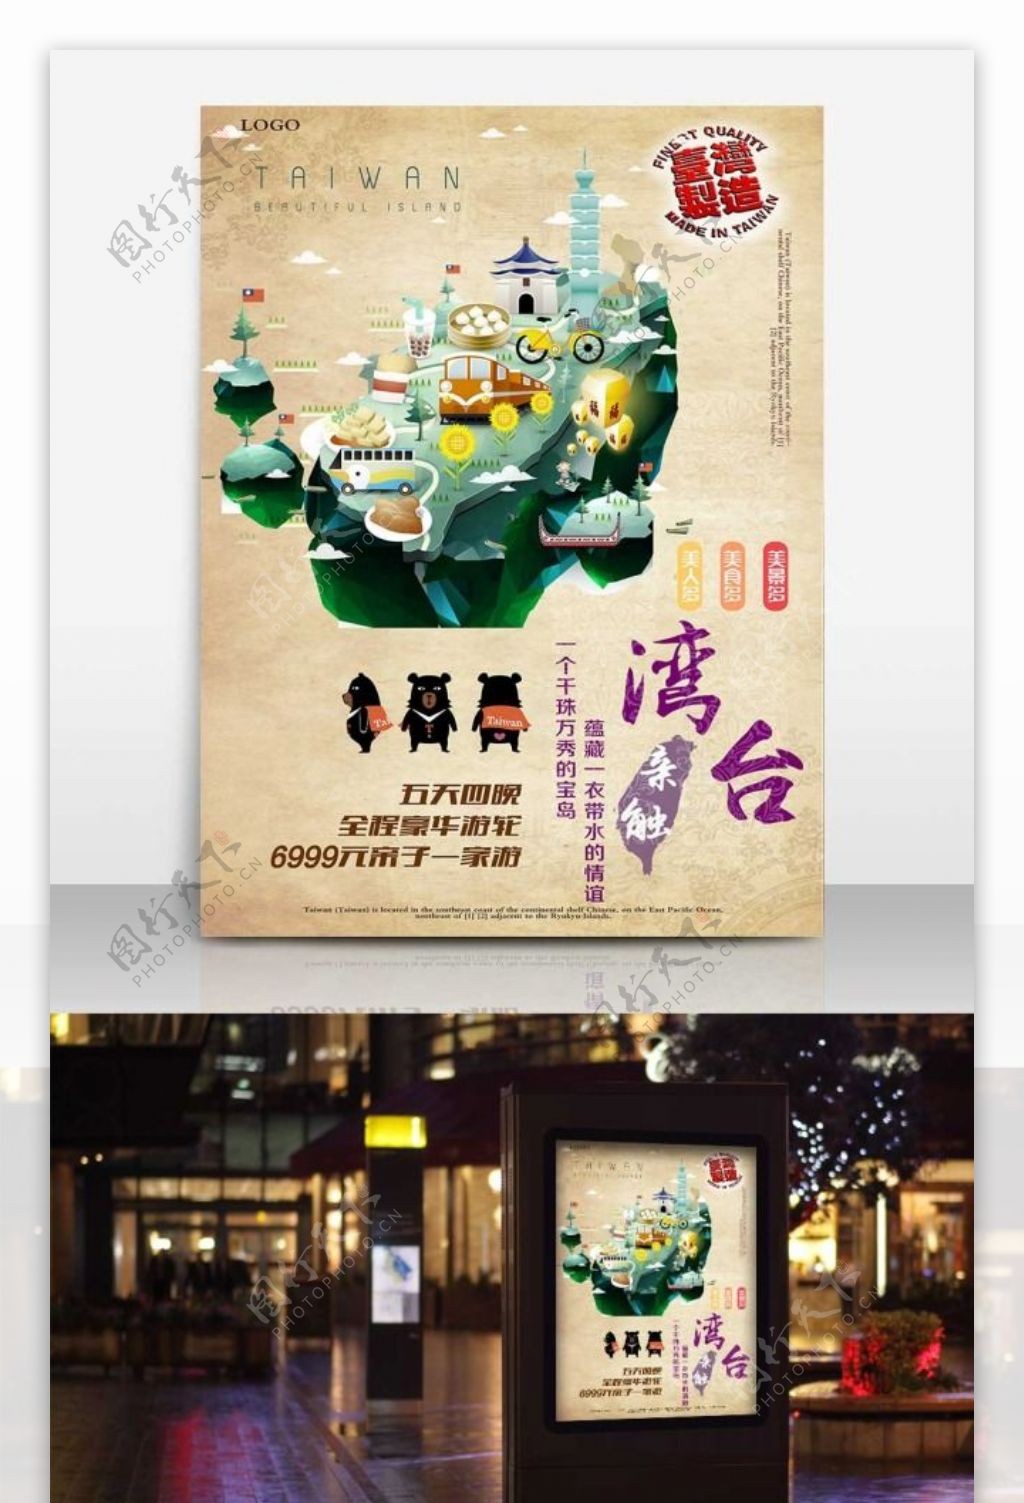 扁平化台湾旅游海报设计